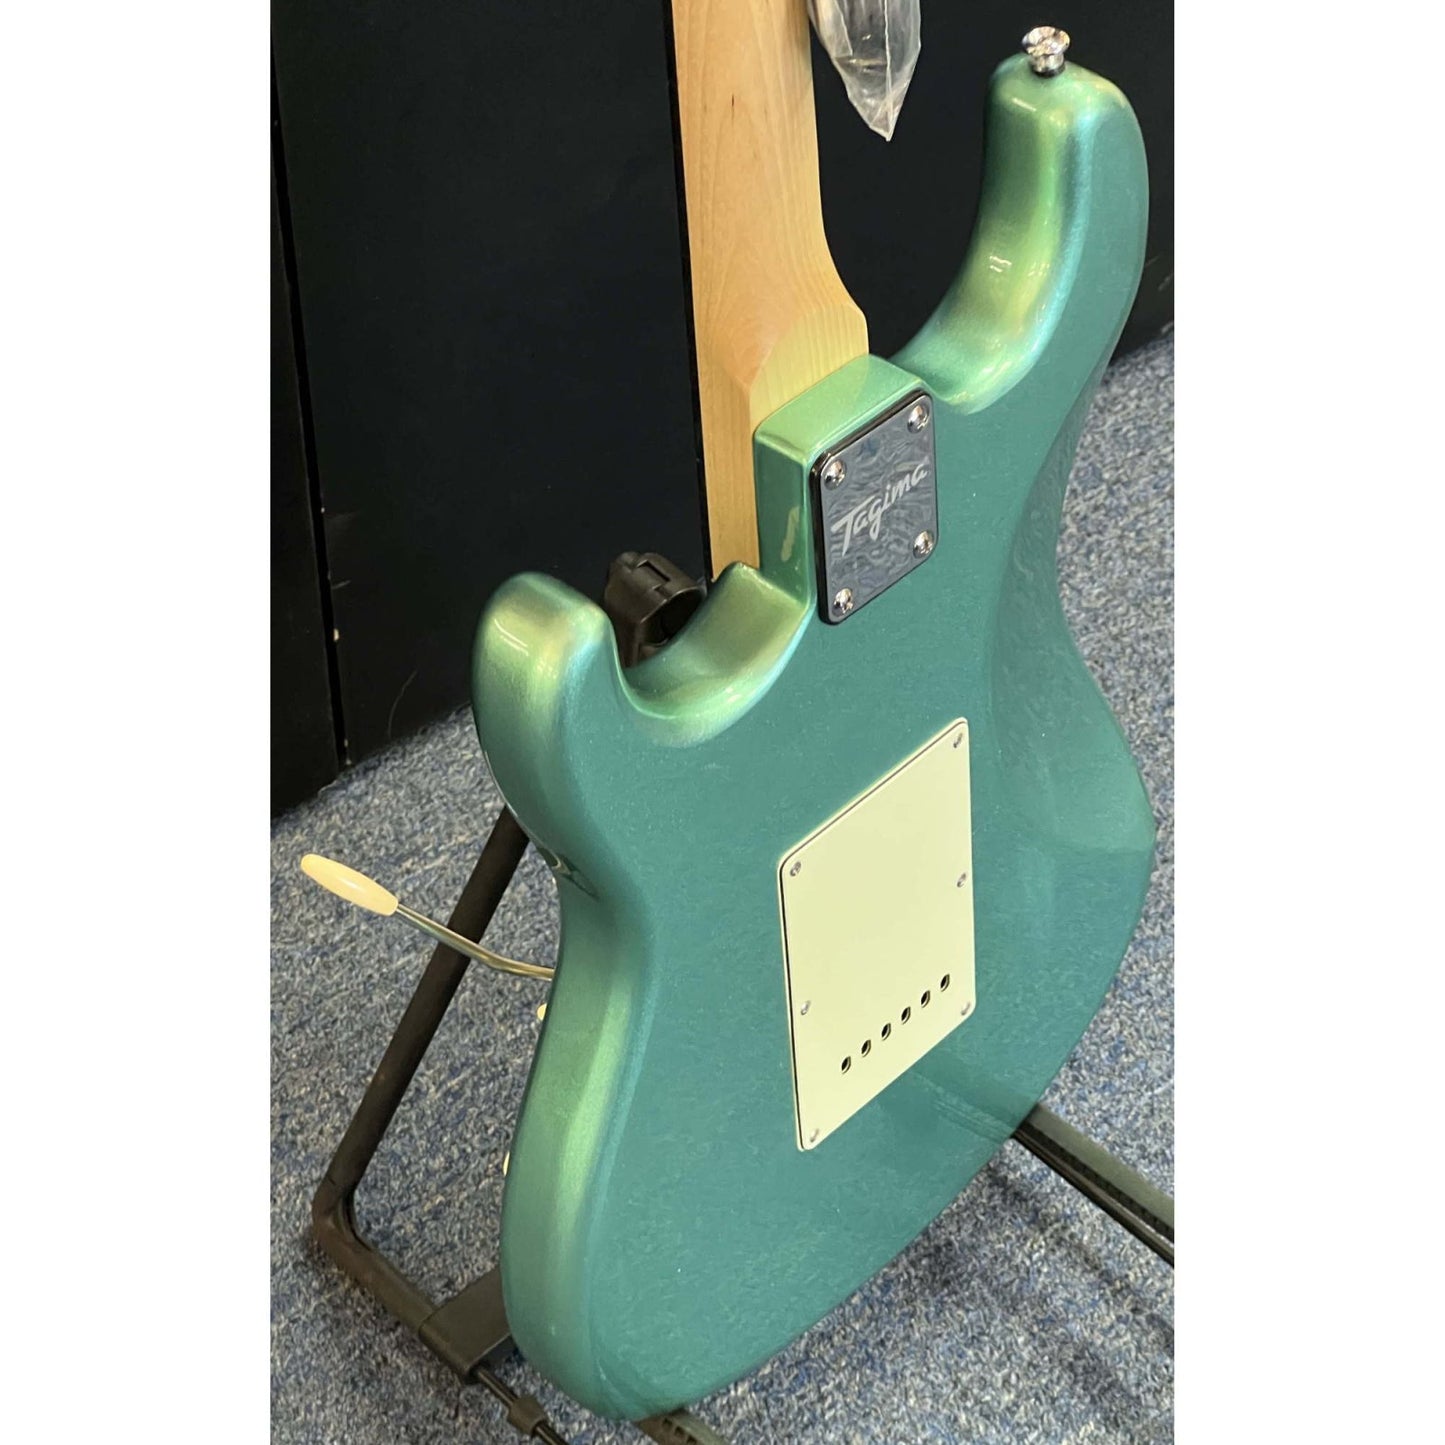 Tagima TG-500 Electric Guitar Metallic Sea Foam Green